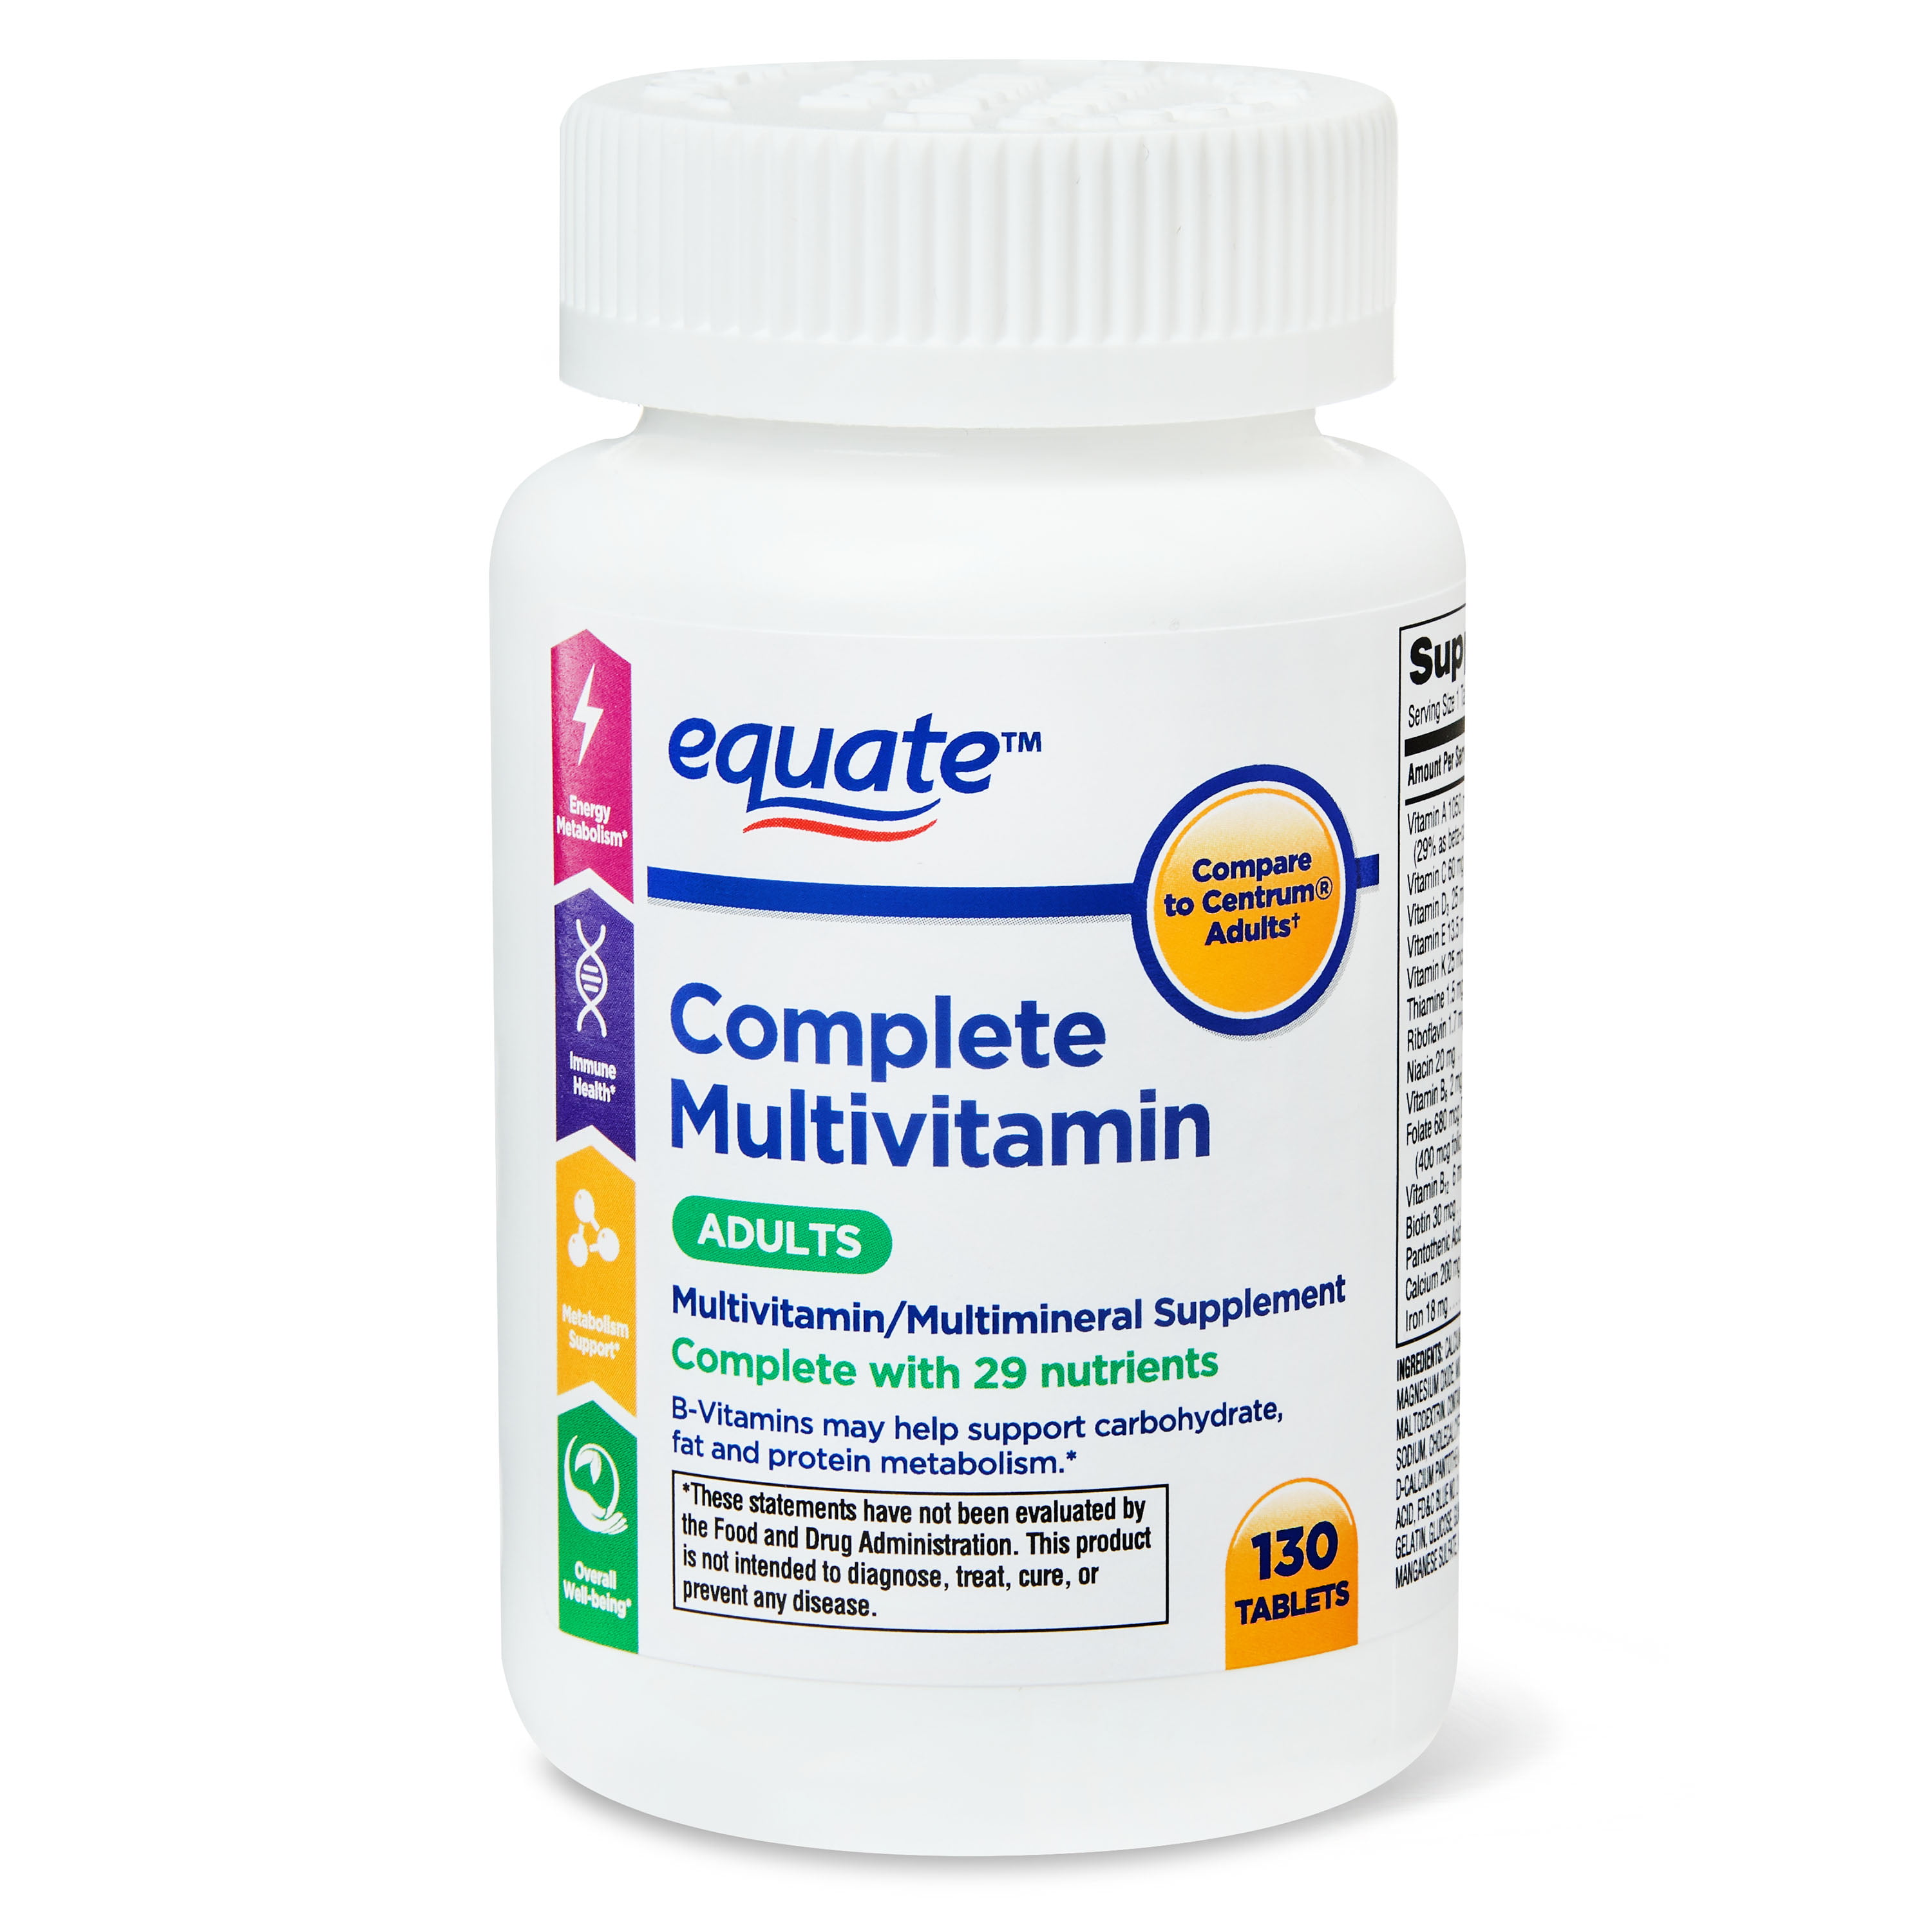 Витамины с цинком селеном д3. Как пить витамины equate complete Multivitamin.